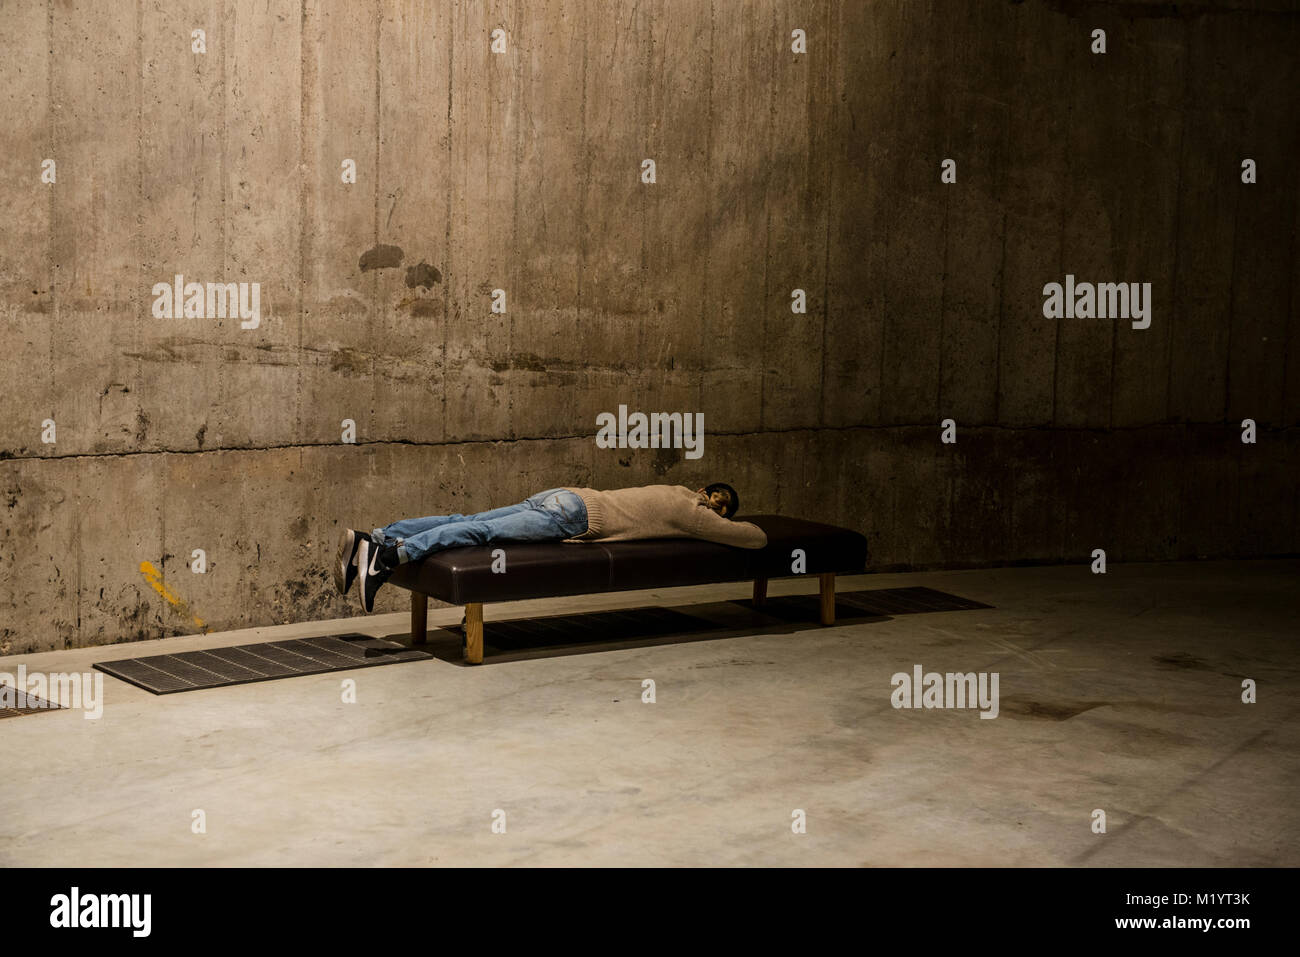 Uomo disteso sul banco da parete in cemento, la Tate Modern di Londra, Inghilterra Foto Stock